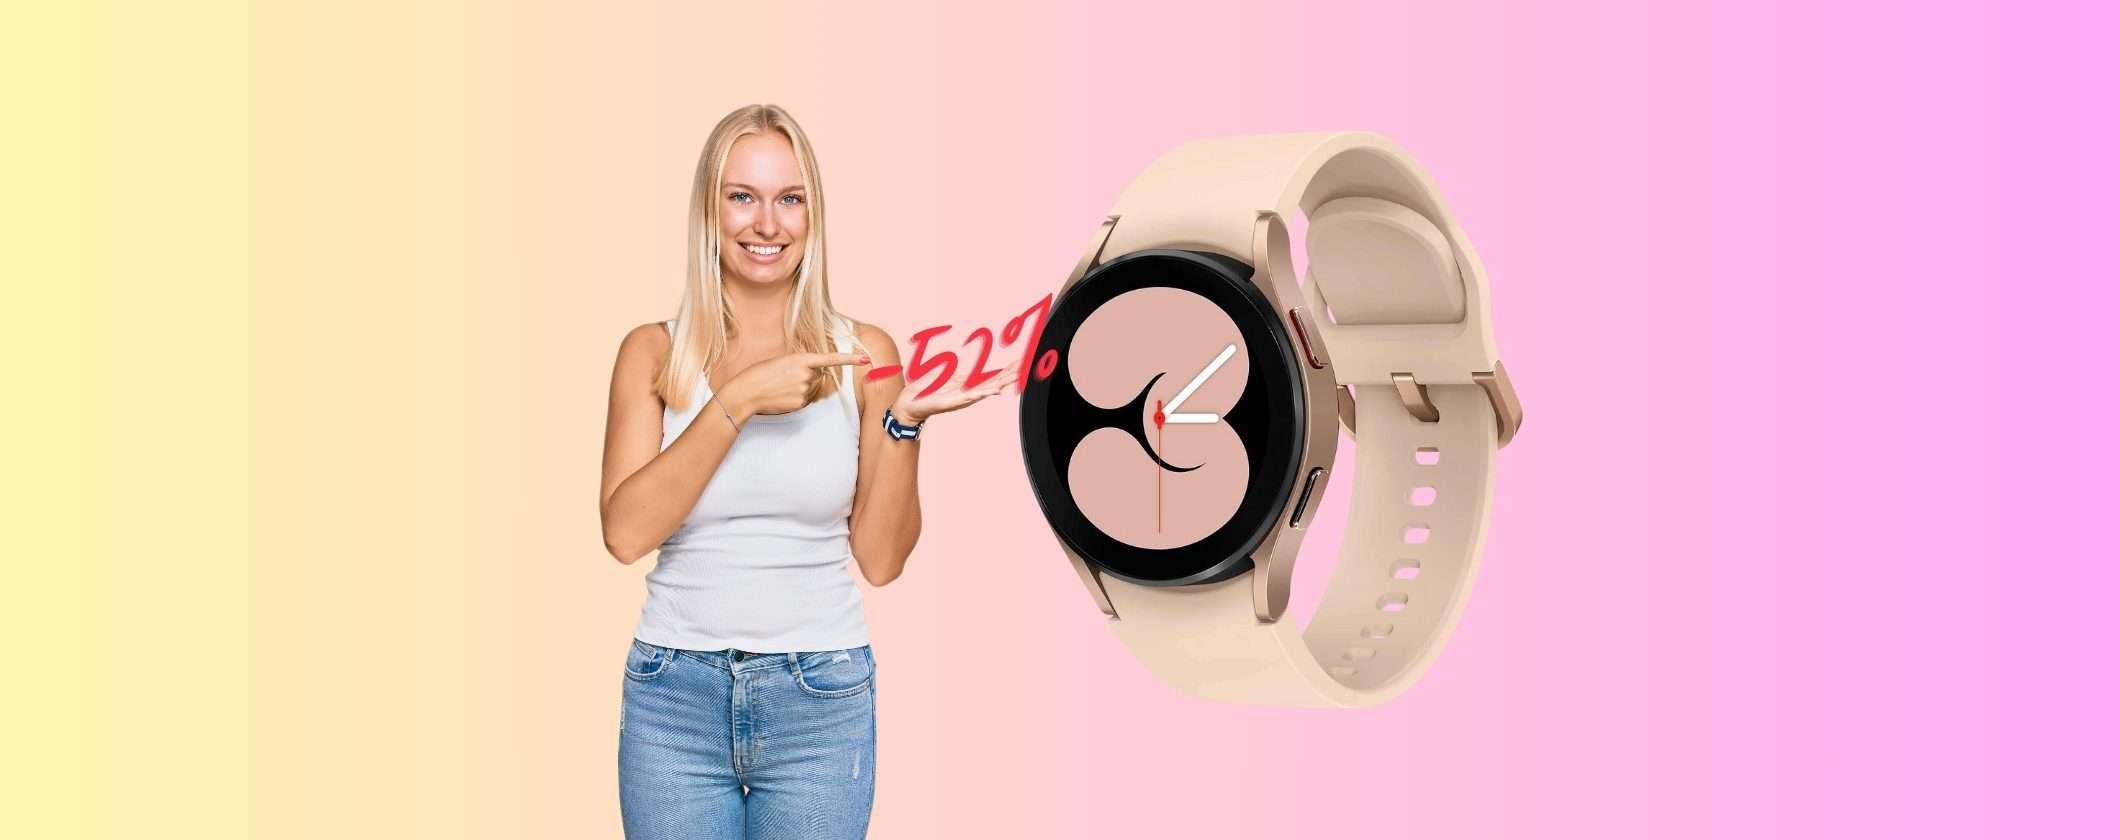 Samsung Galaxy Watch4 al 52% di SCONTO su Amazon